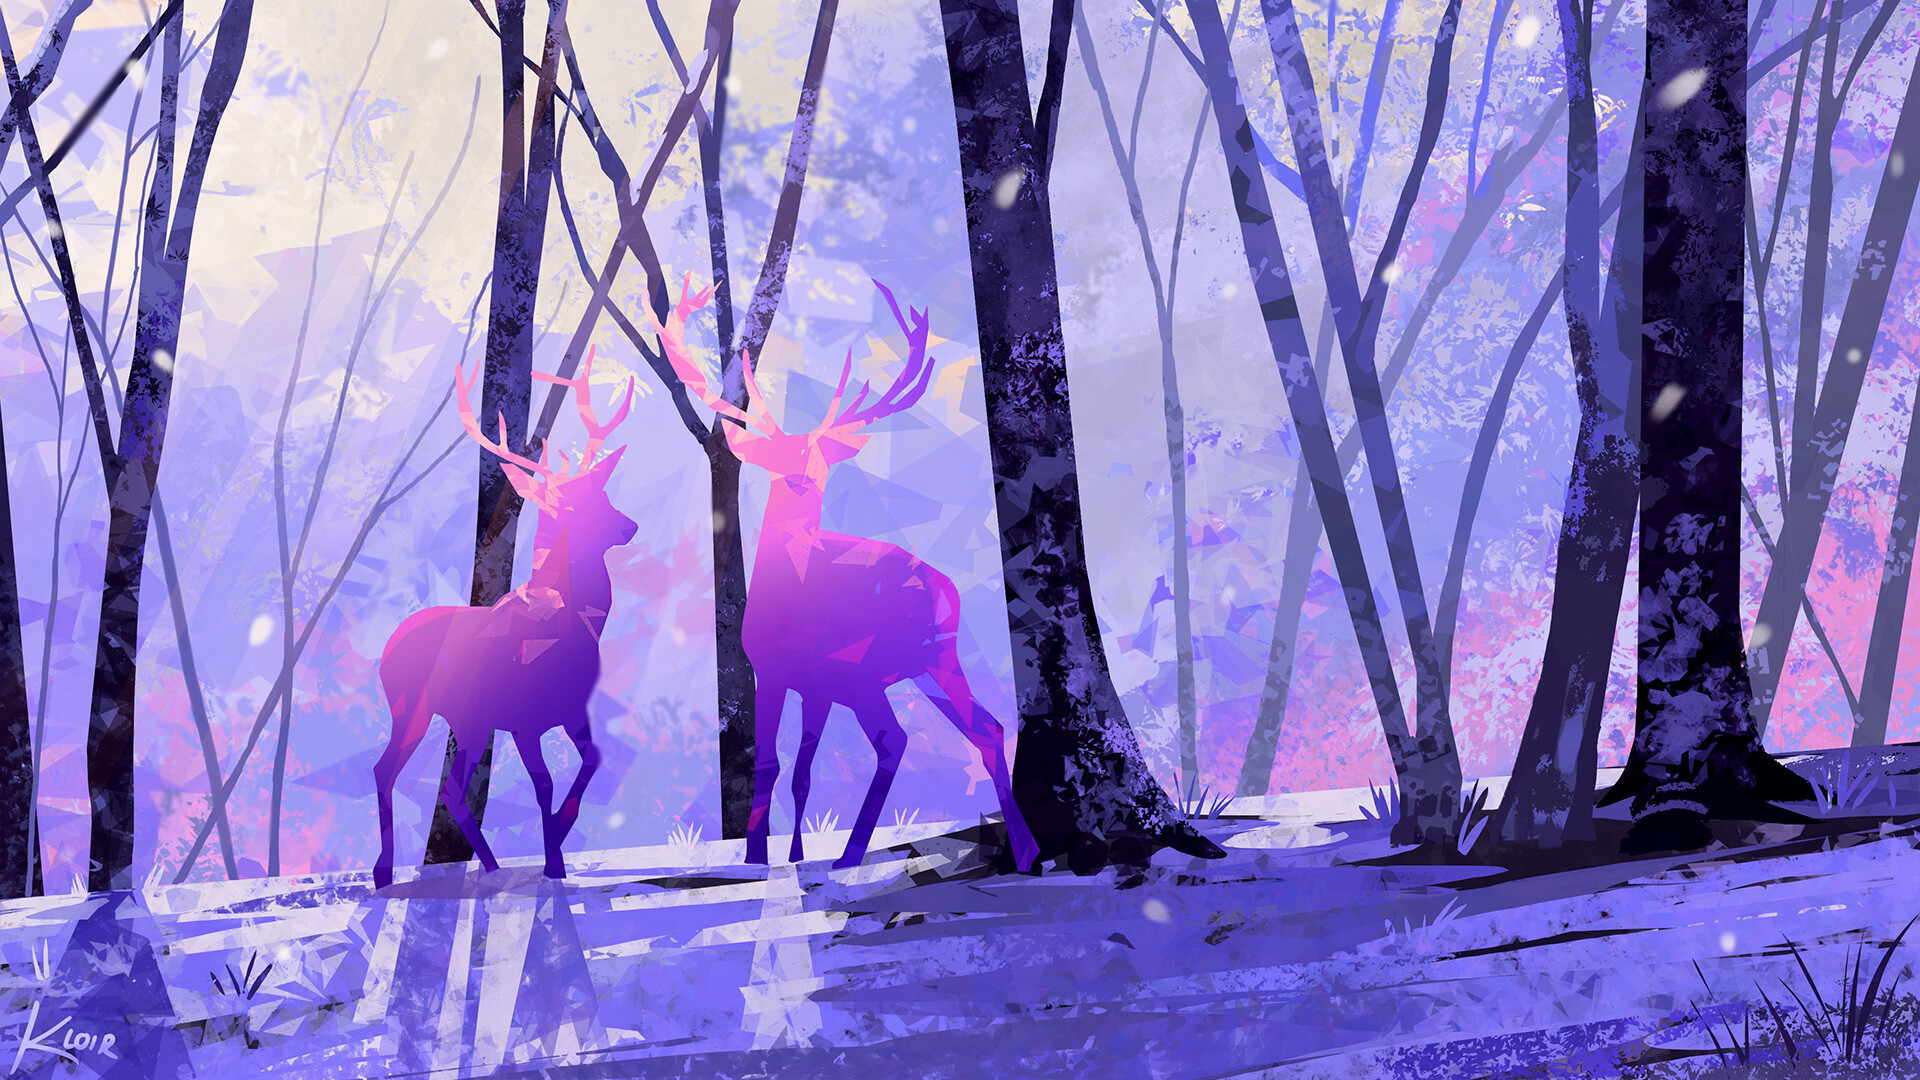 Wallpaper Deer pair, artwork